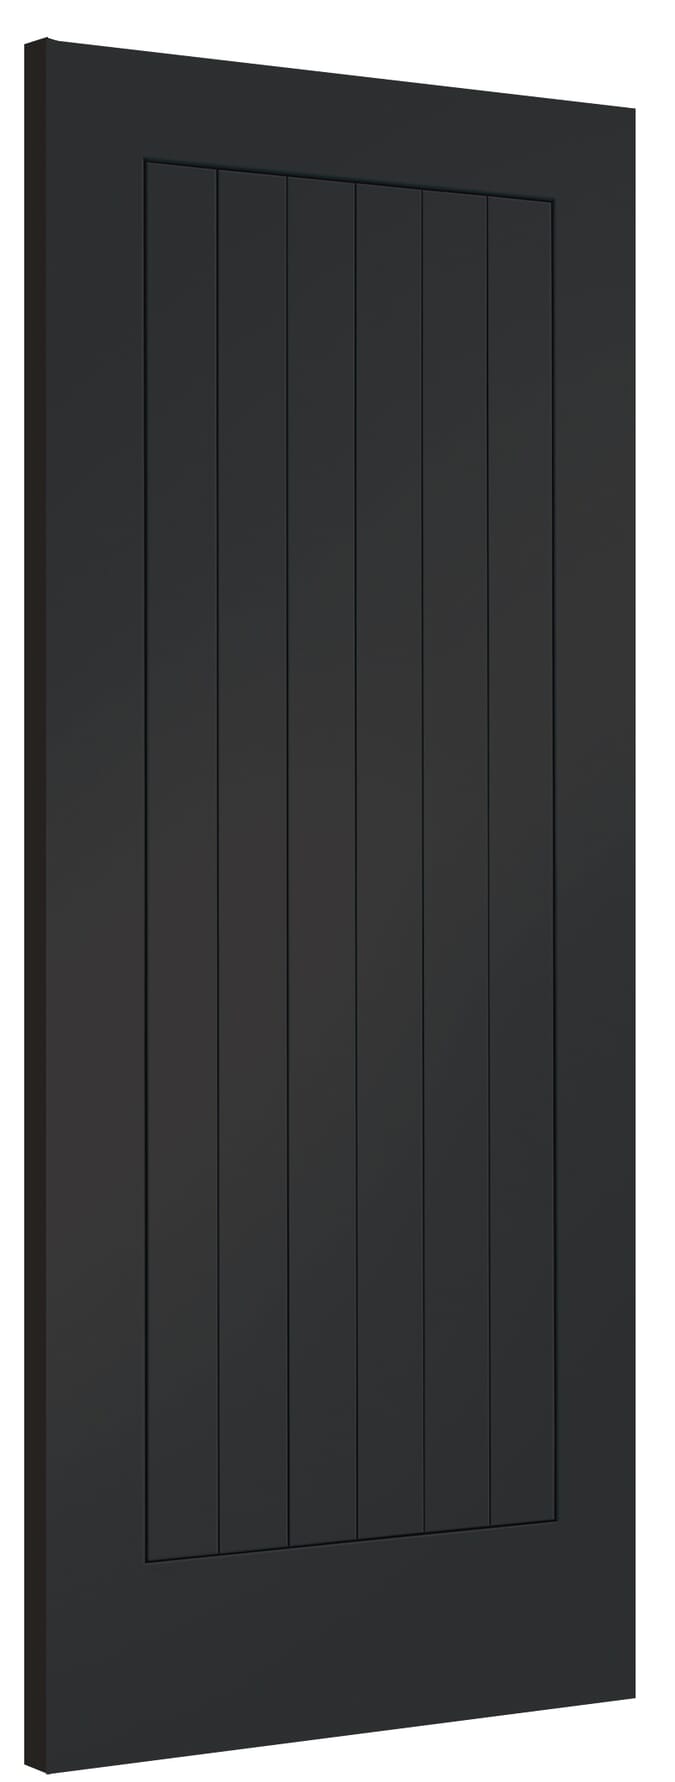 838x1981x44mm (33") Suffolk Cosmos Black Fire Door